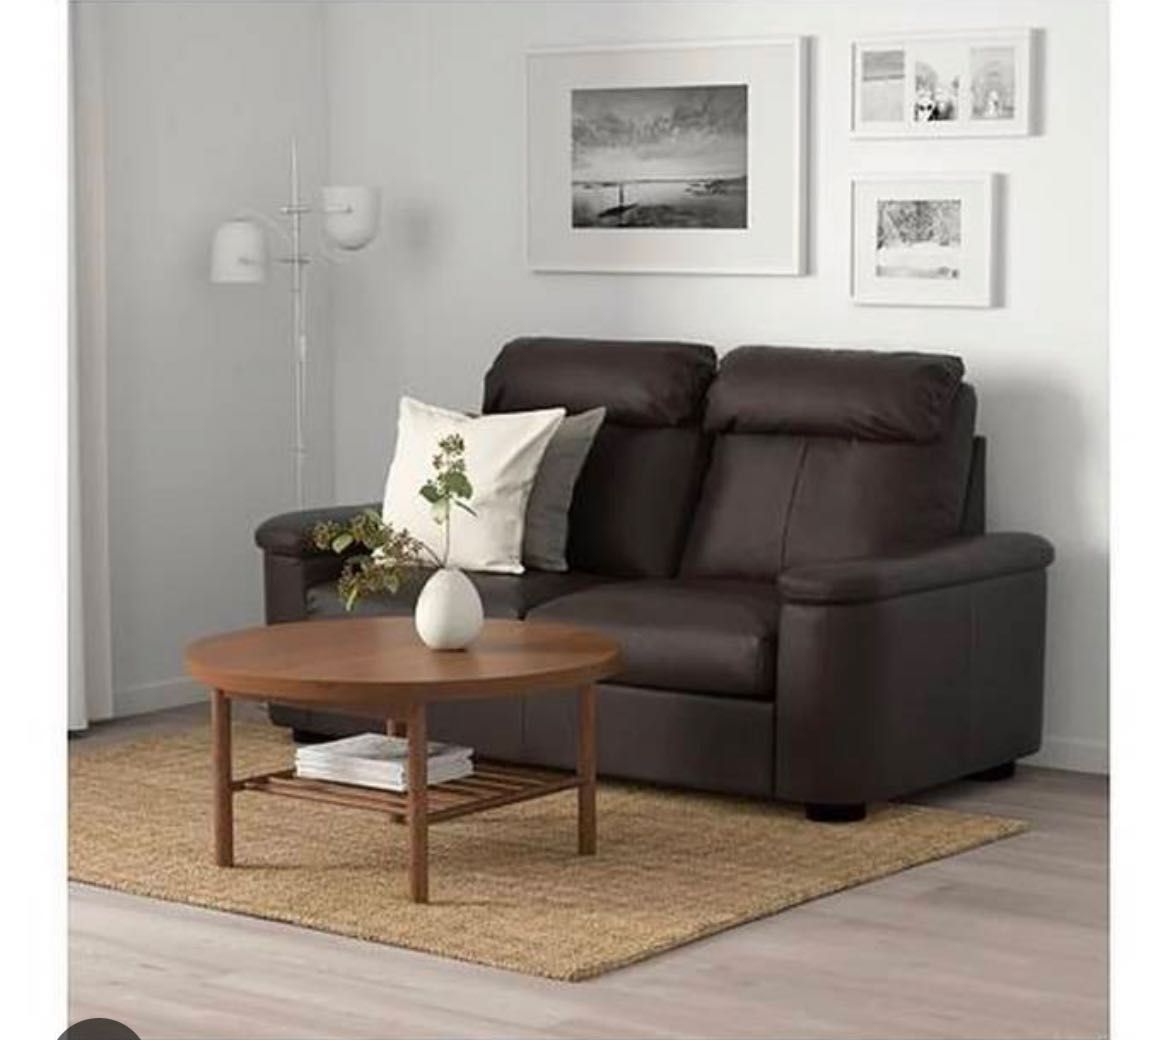 Sofa 100% skóra marki Ikea